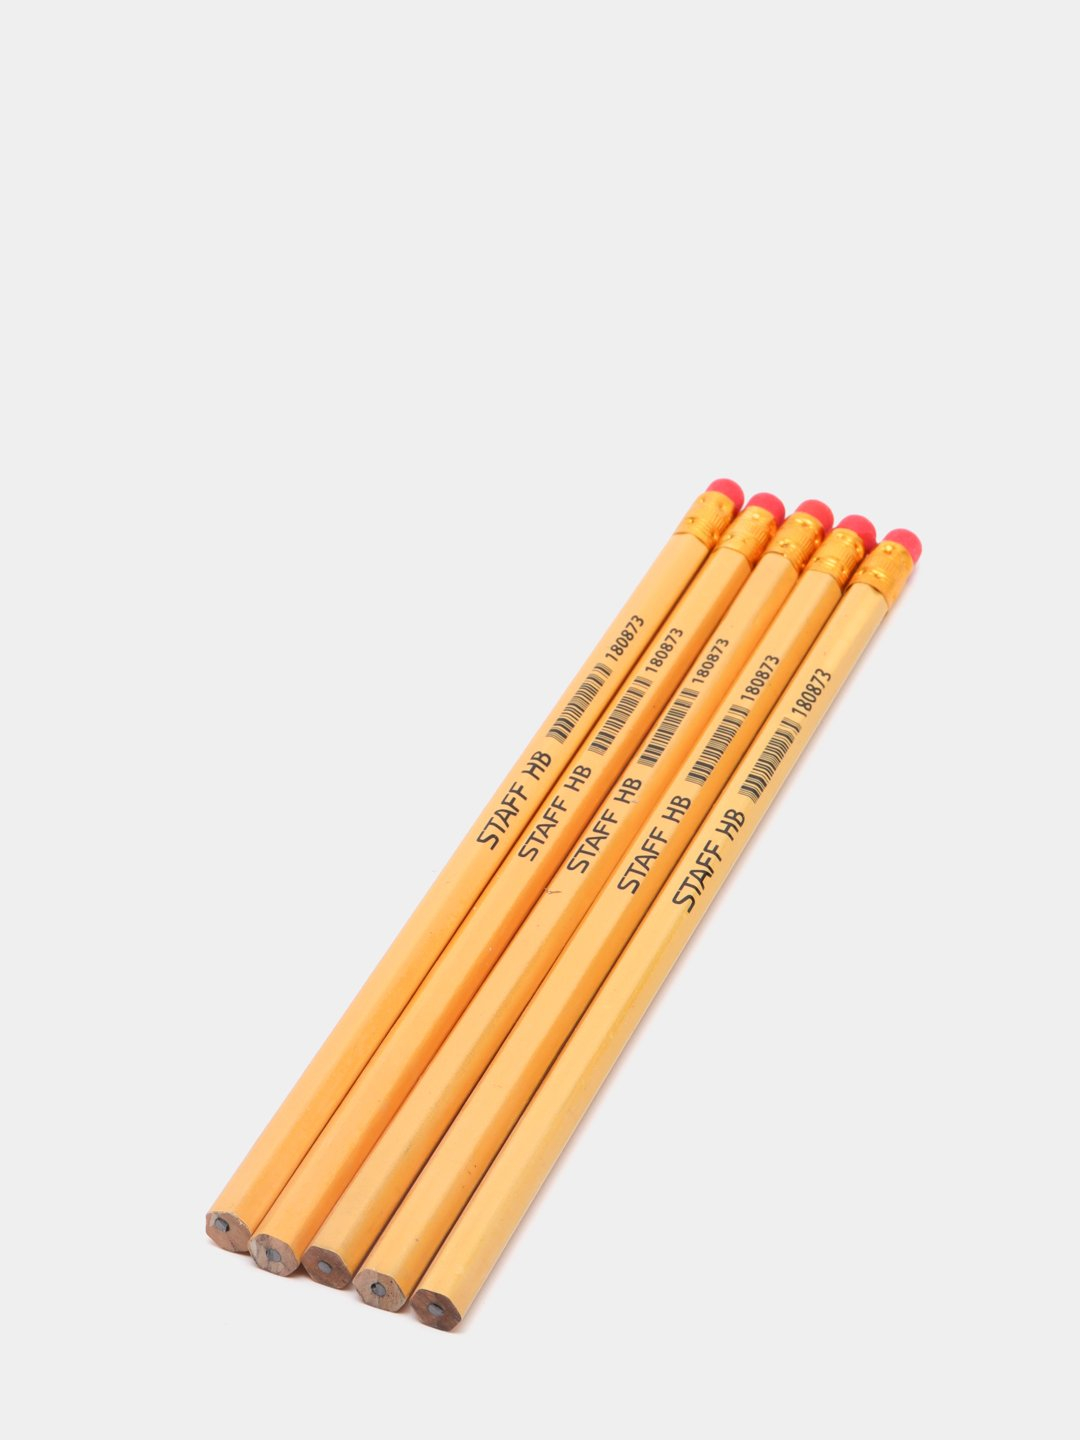 Ластик для карандаша, материал из которого производится